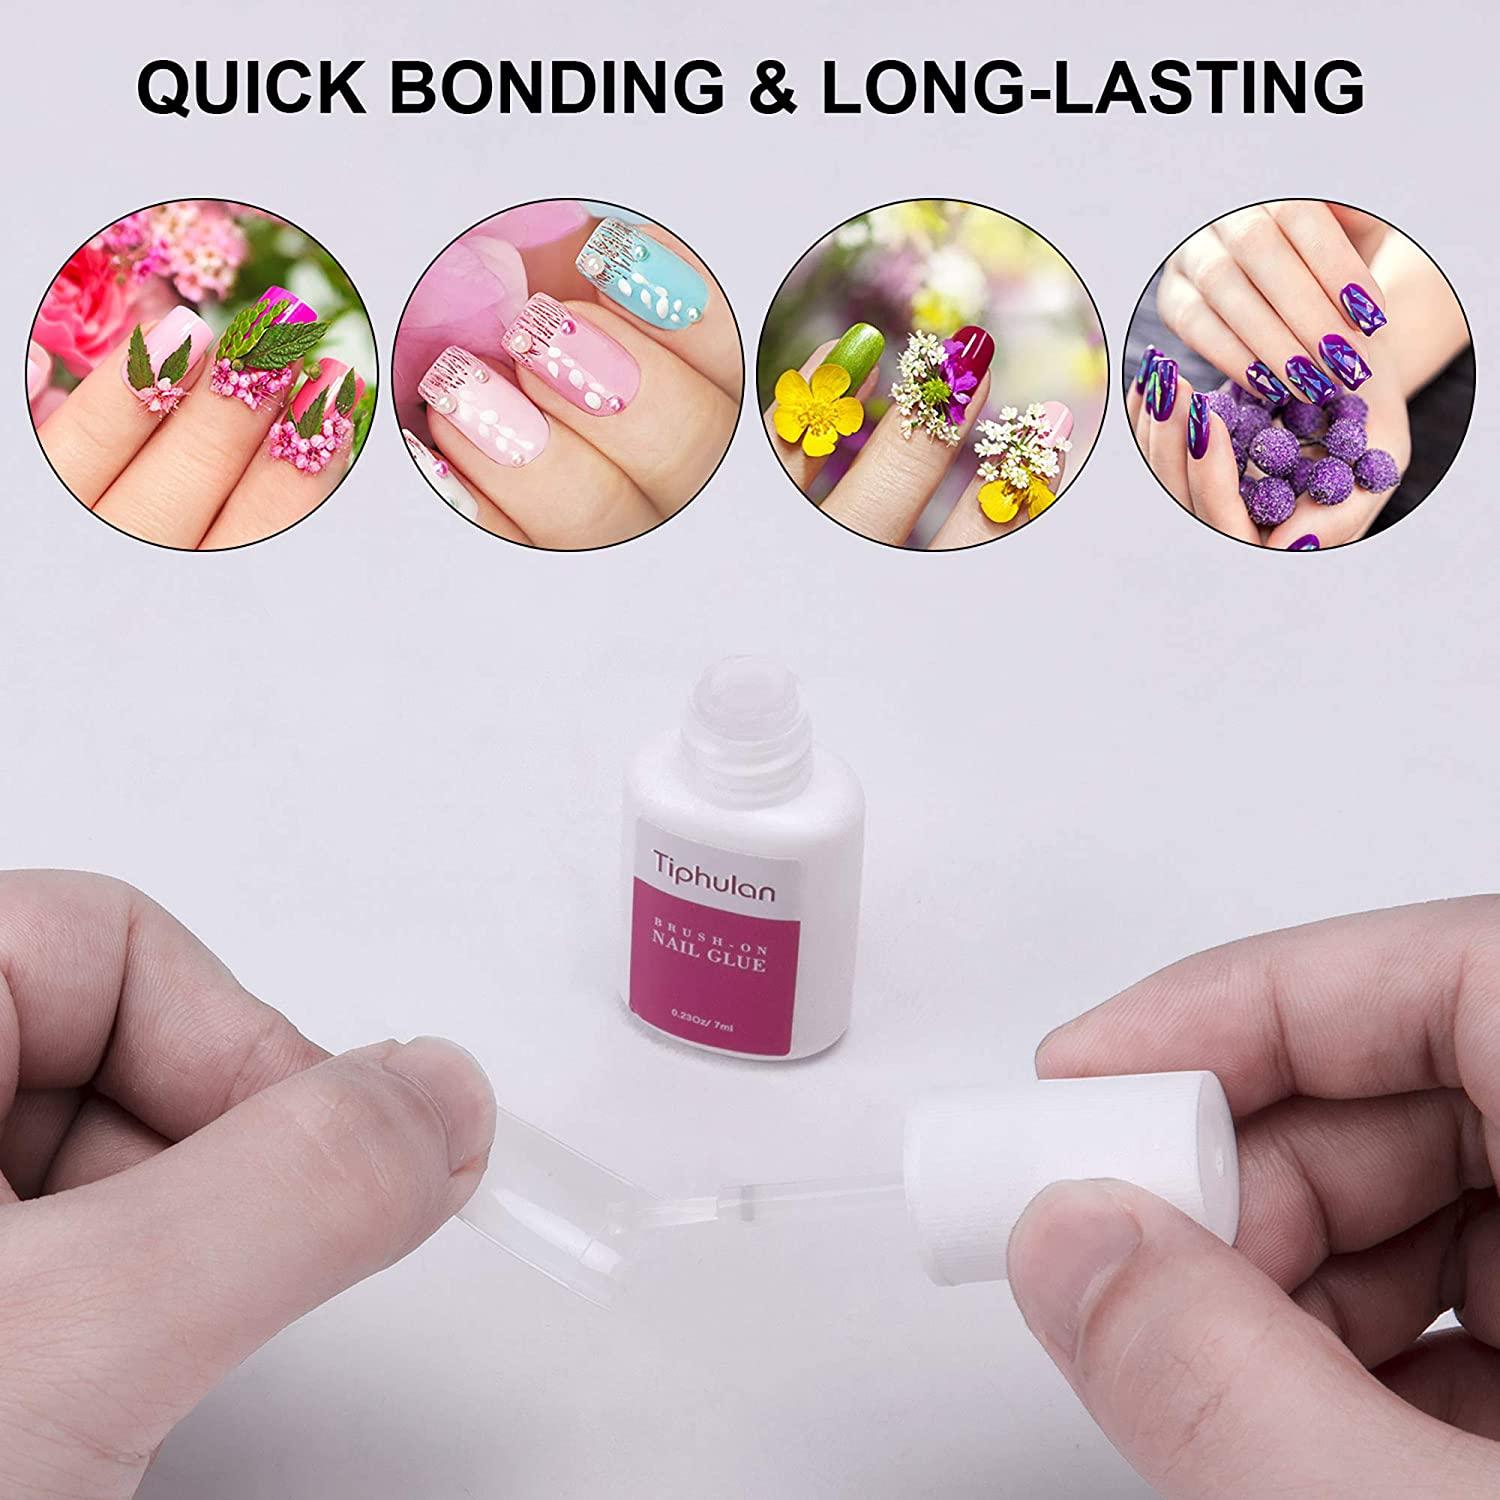 TIPHULAN Brush on Nail Glue for Press on Nails - Nail Glue for Acrylic  Nails Quick Strong False Nails Tip Glue 4pcs Adhesive Super Nail Bond Nail Glue  Bulk for Nail Tips